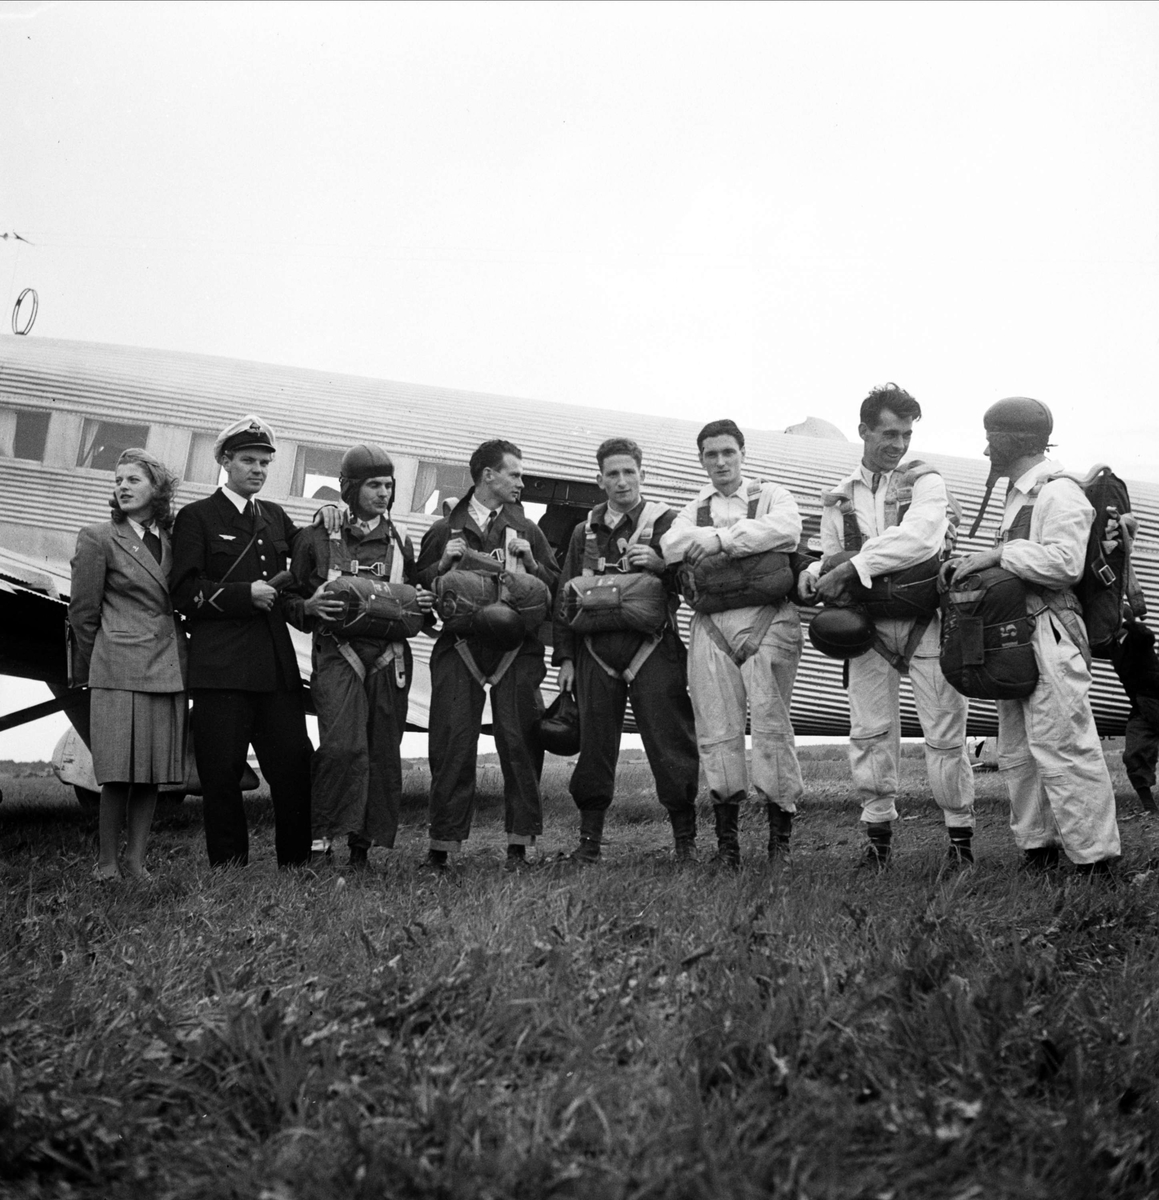 Franska fallskärmshoppare, "Sportflygets dag", Sundbro flygplats, Uppland 1948